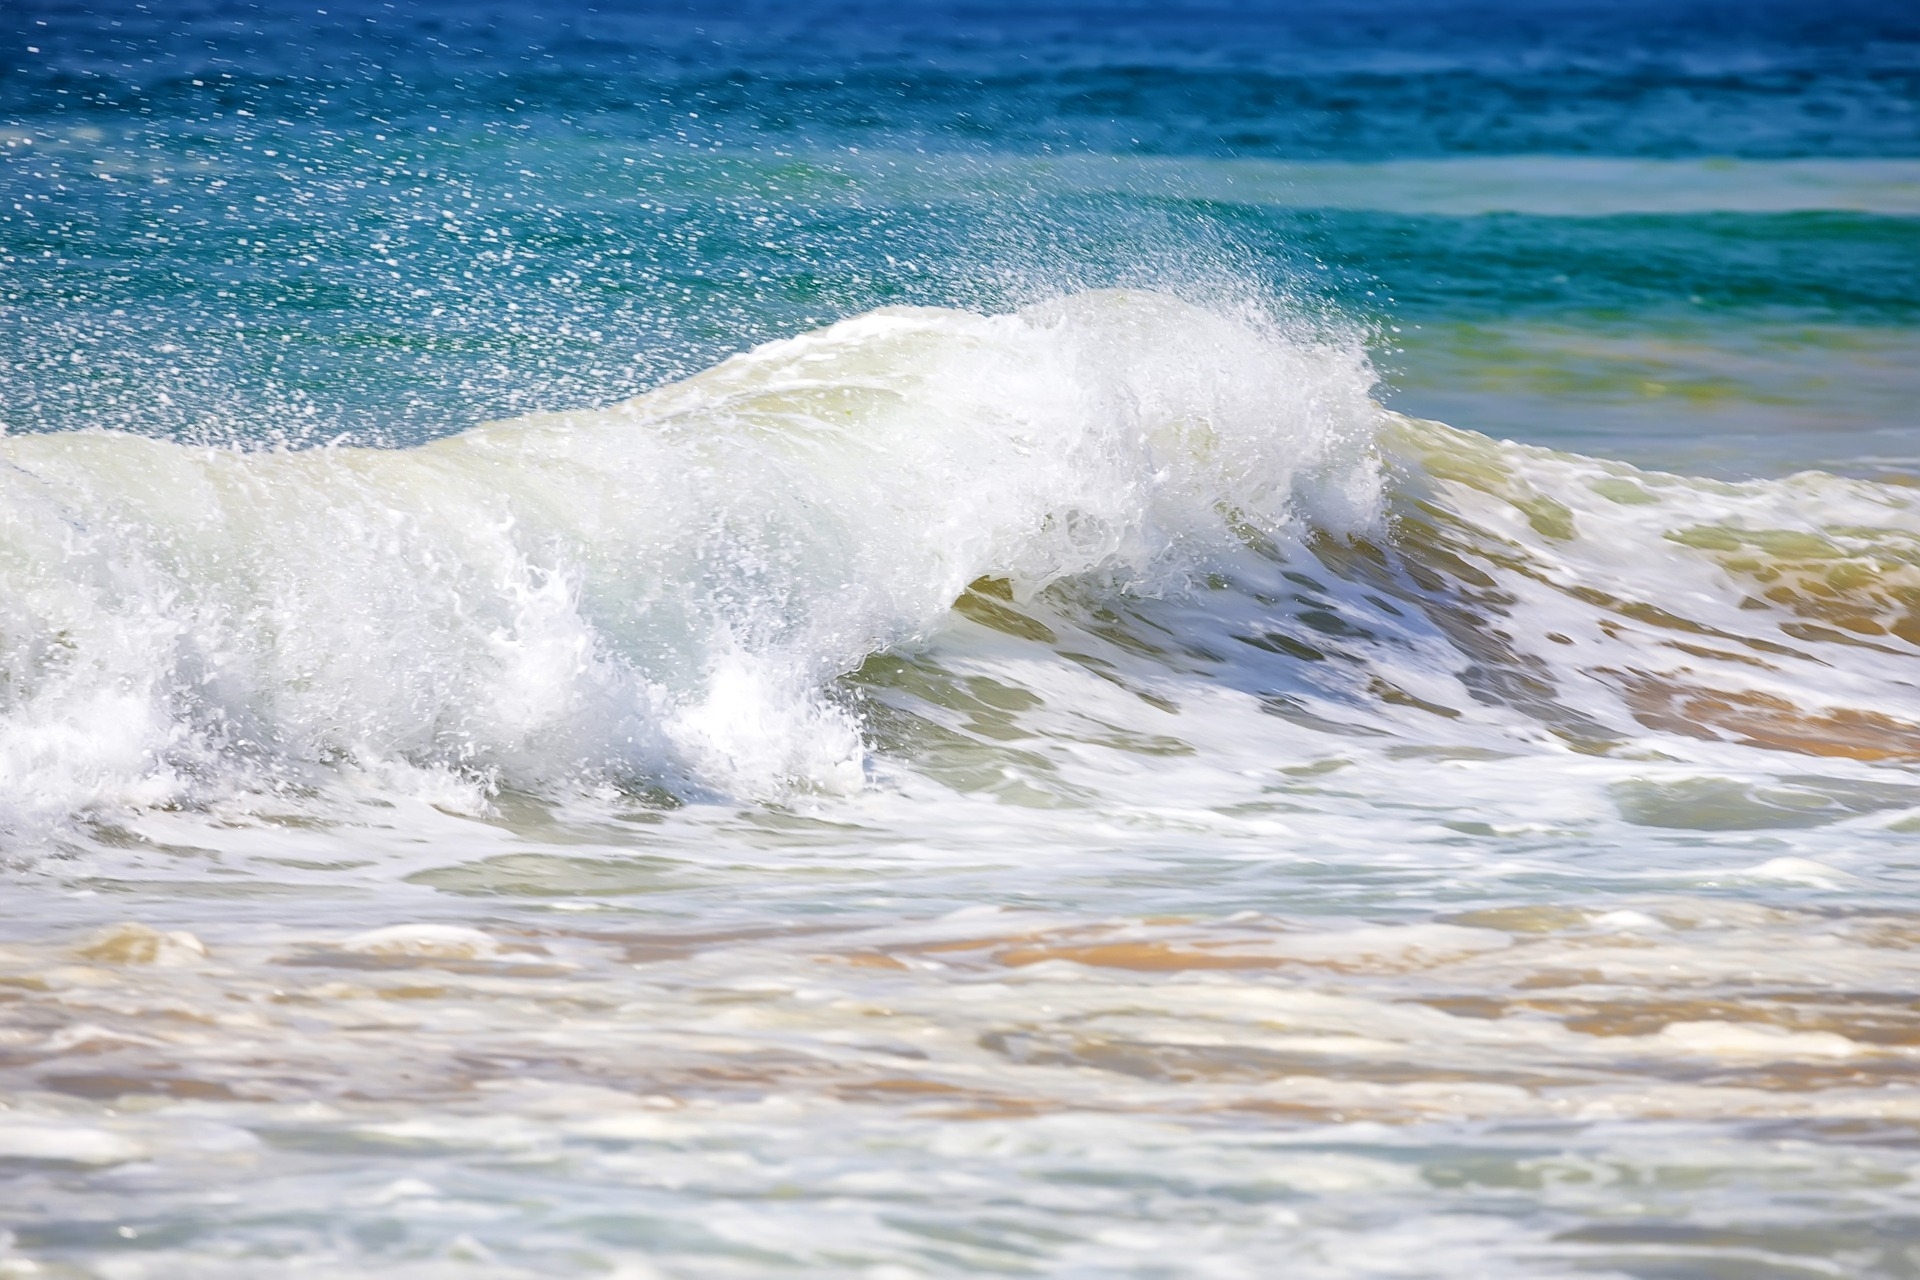 Blue Bond: de brekende golven op de stranden symboliseren de vitaliteit van de zee